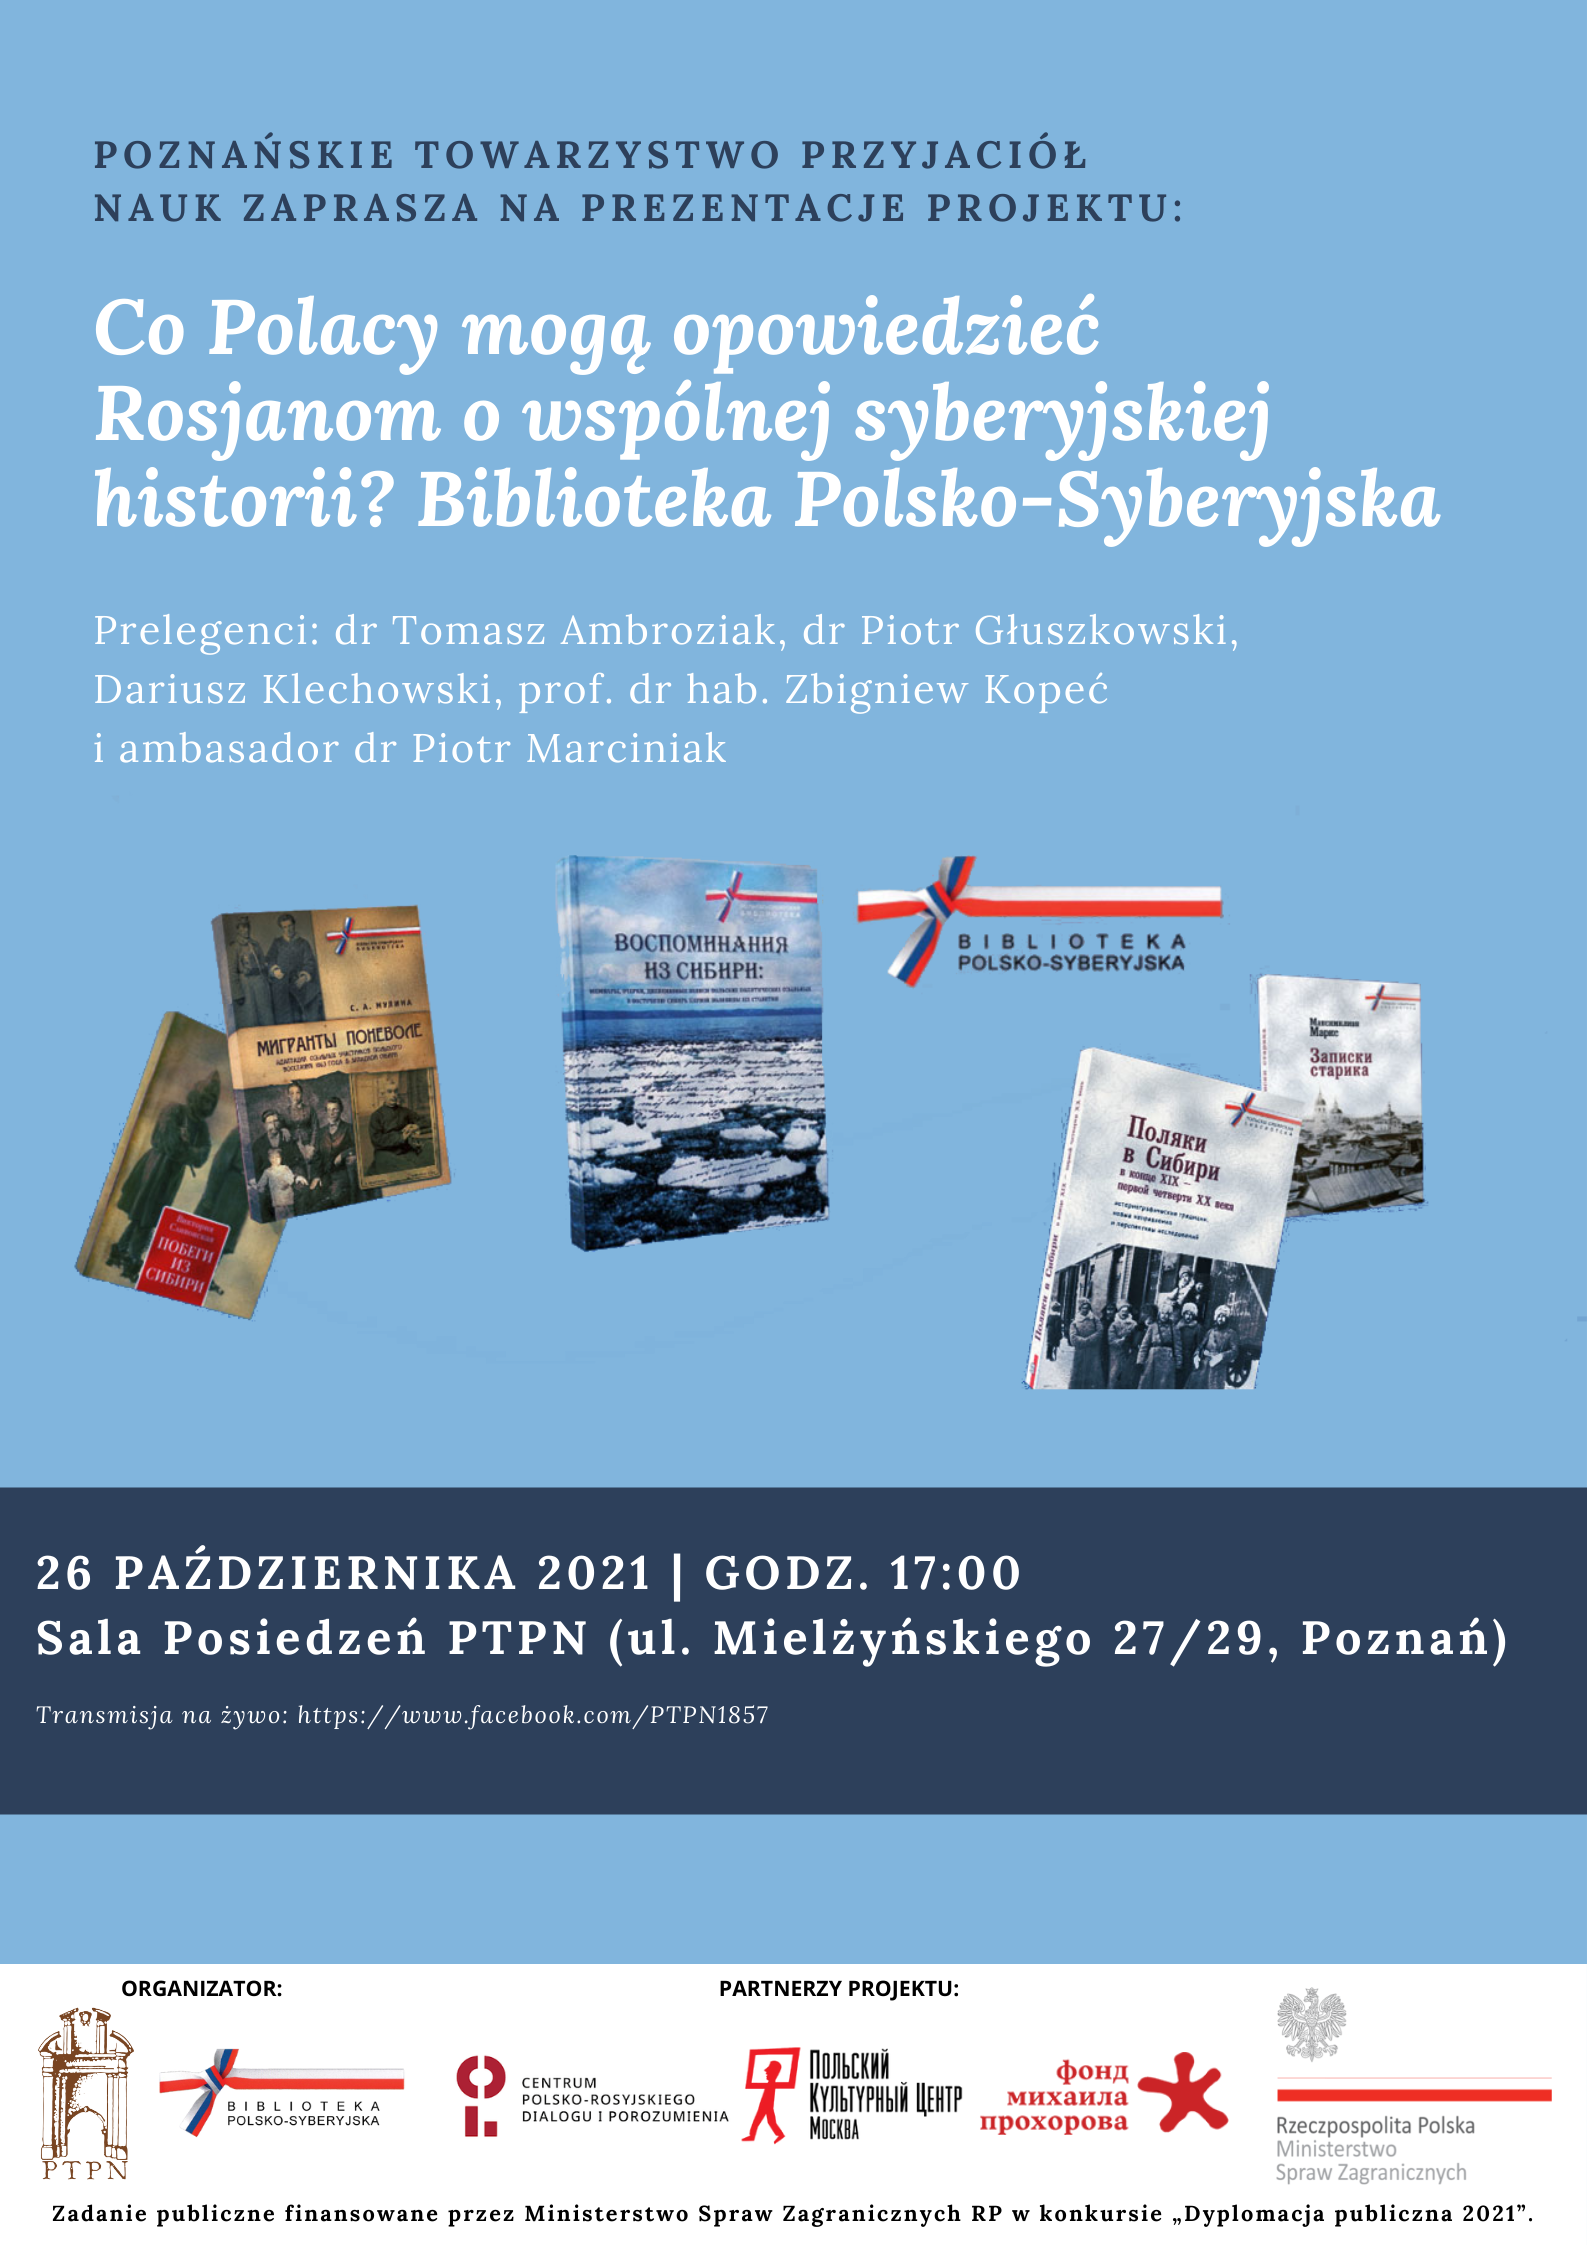 „Co Polacy mogą opowiedzieć Rosjanom o wspólnej syberyjskiej historii? Biblioteka Polsko-Syberyjska” – prezentacja projektu_26.10